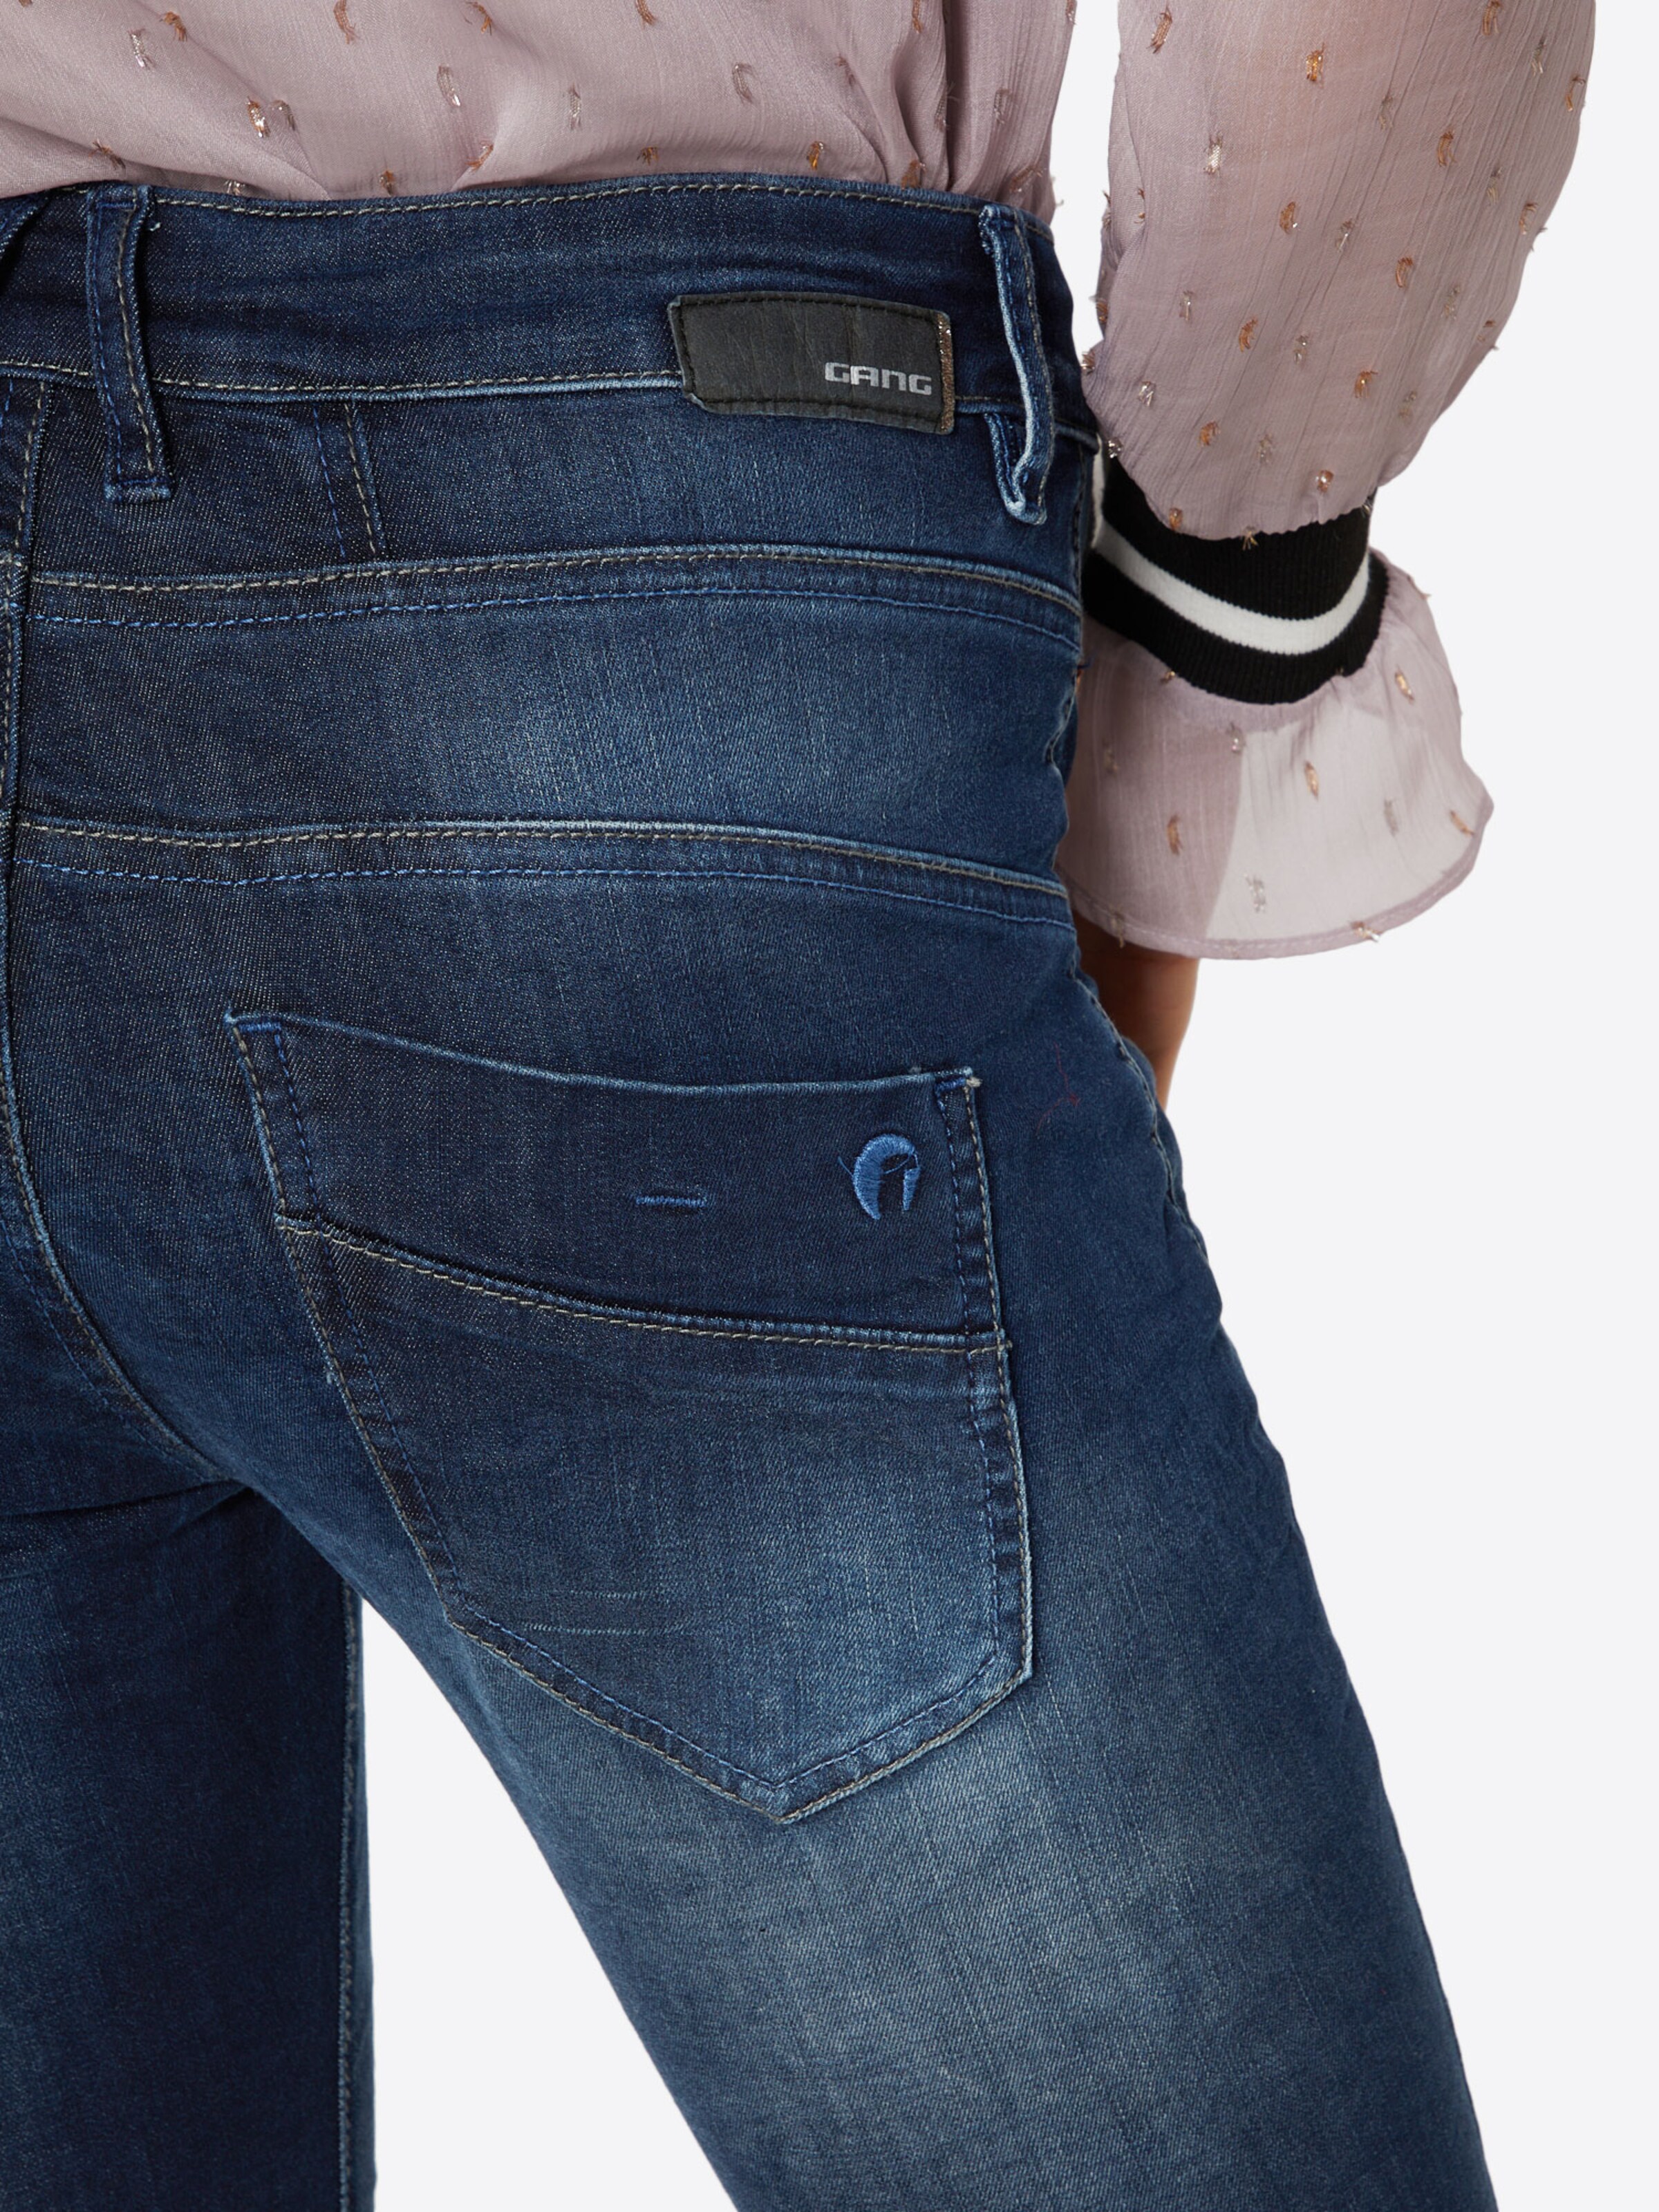 Frauen Jeans Gang Jeans in Blau - IK44539